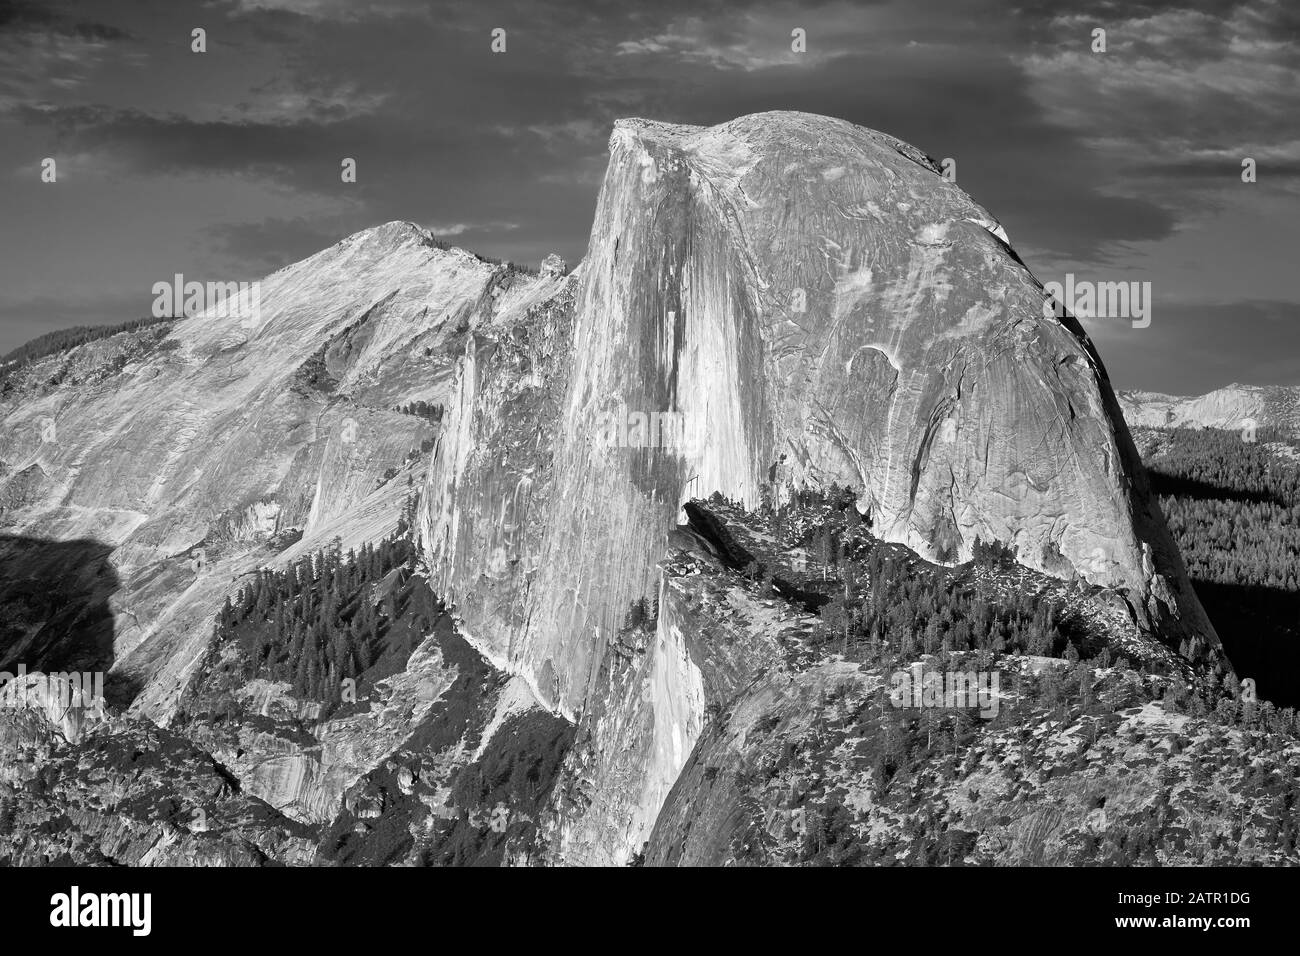 Black and white picture of Half Dome, famous granite dome of Yosemite Valley, California, USA. Stock Photo